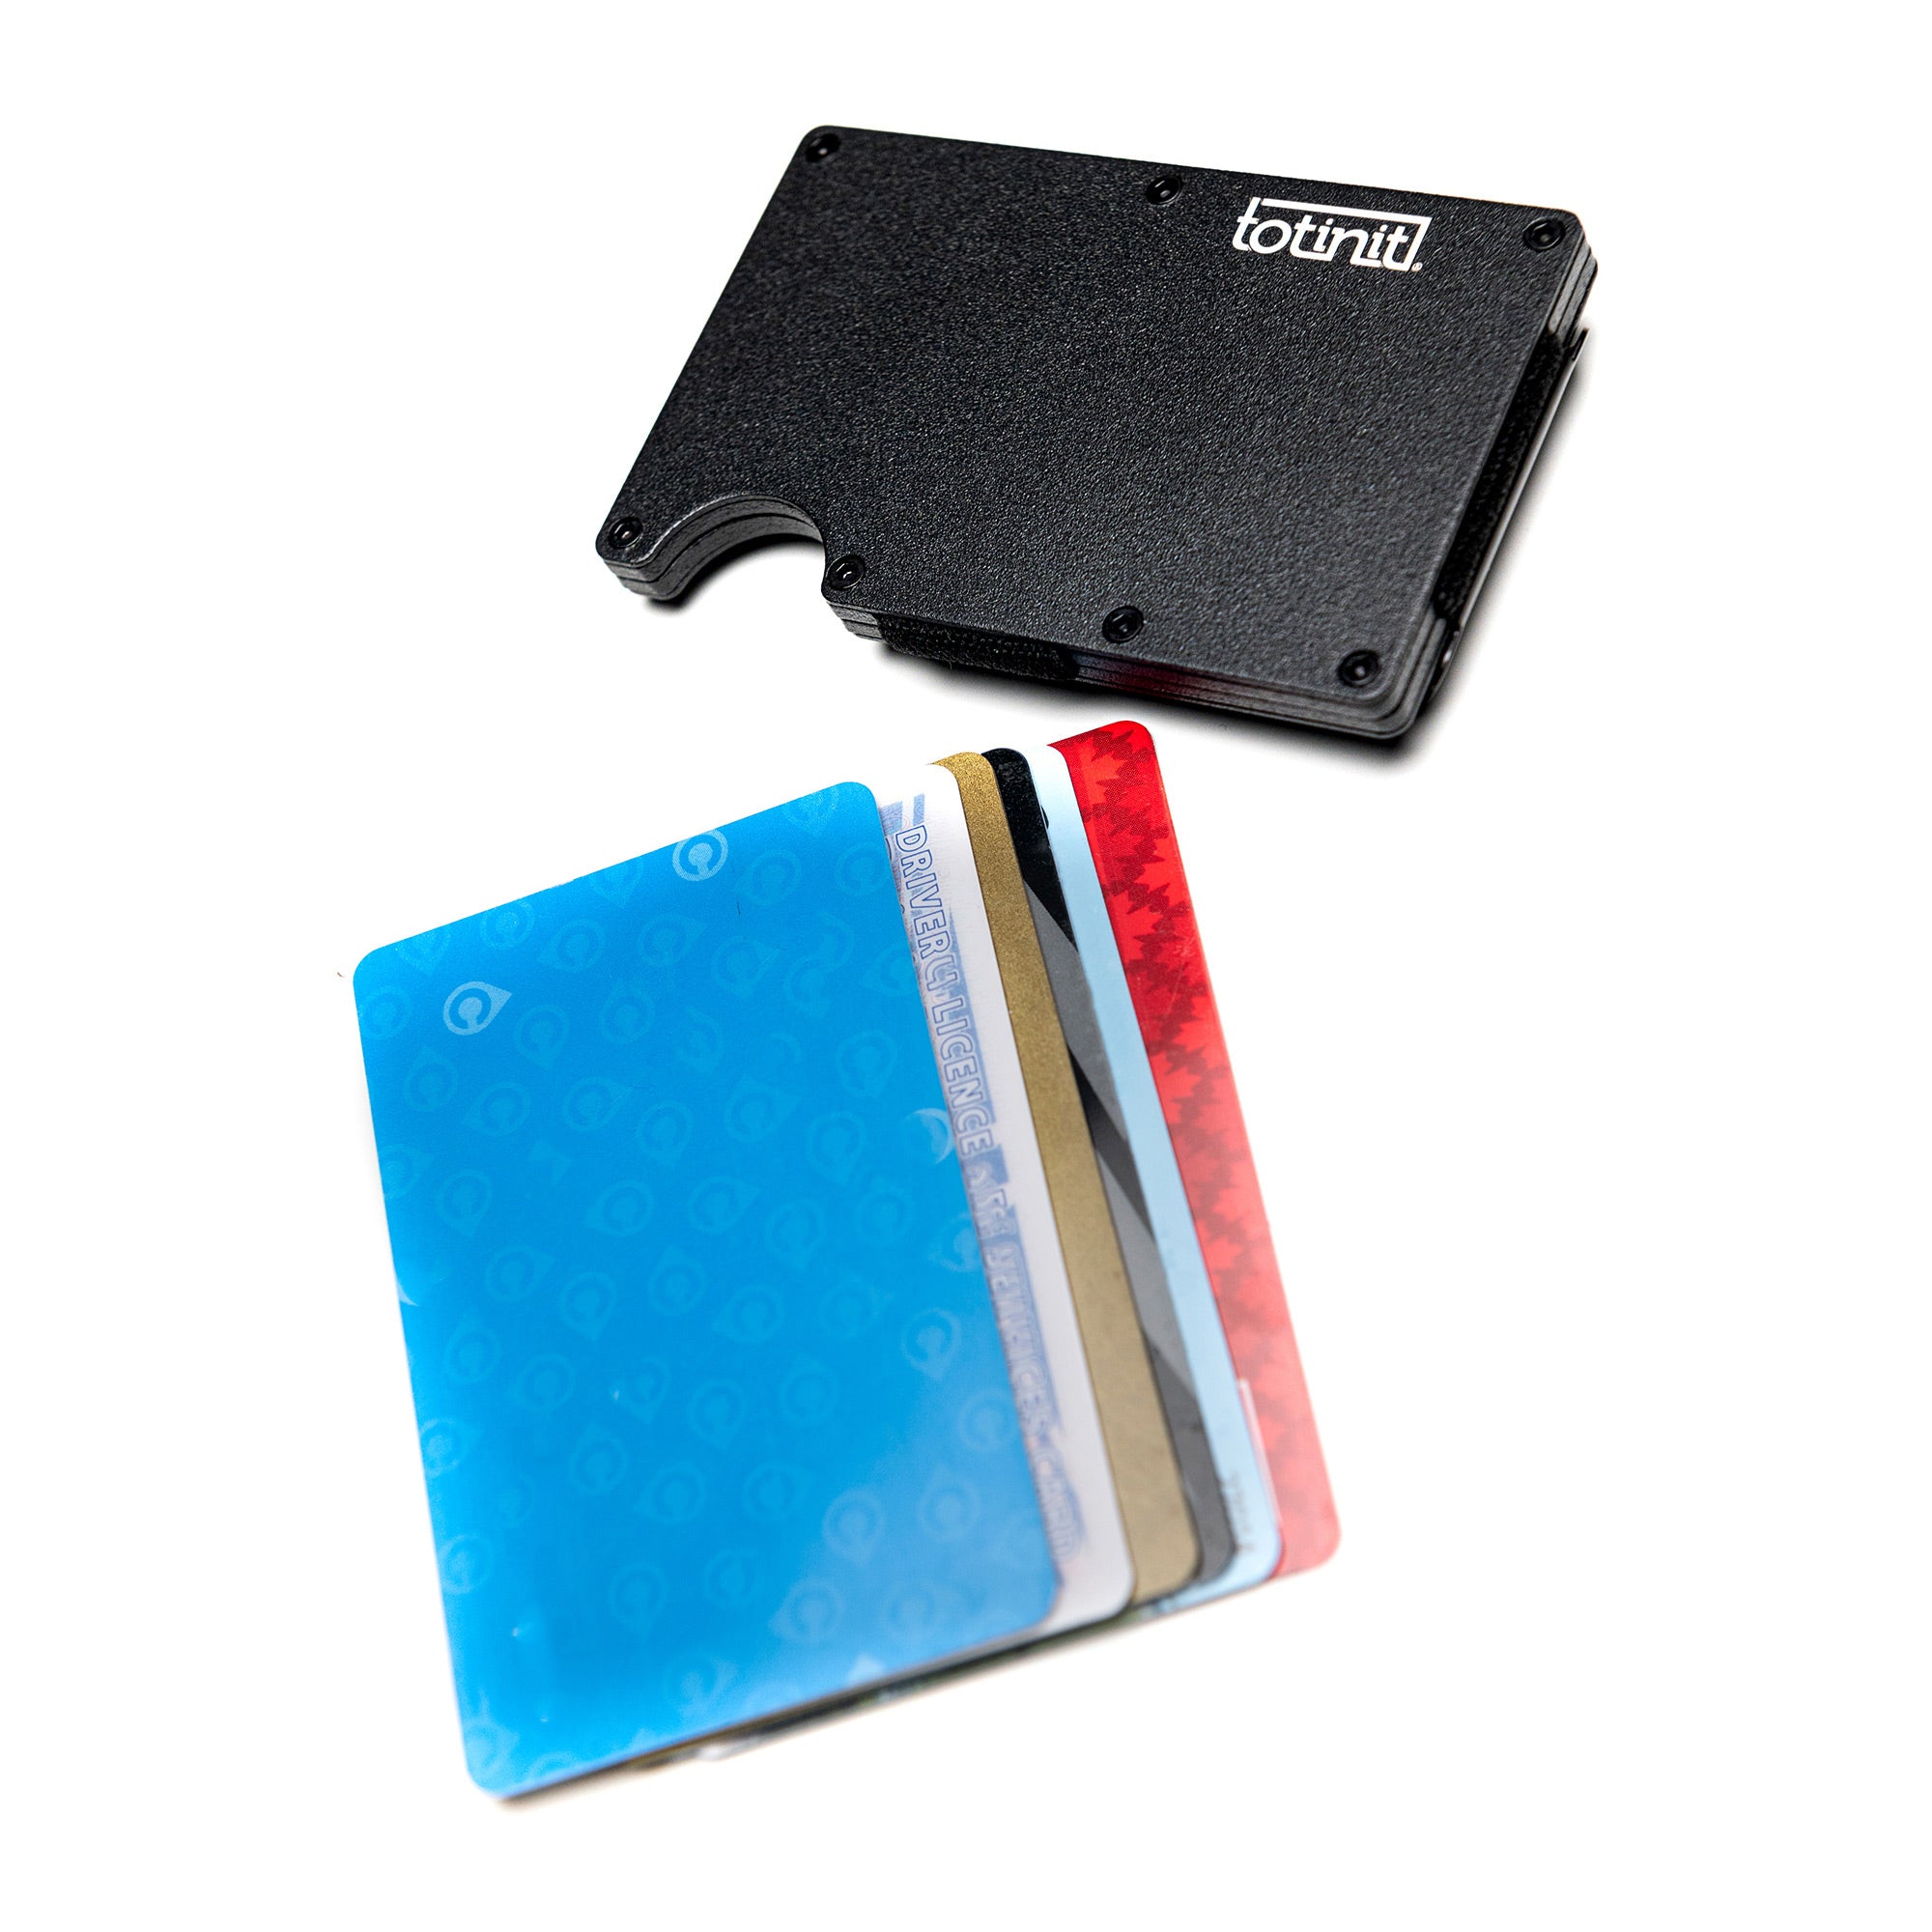 Totinit Vault RFID Wallet - 15-08104